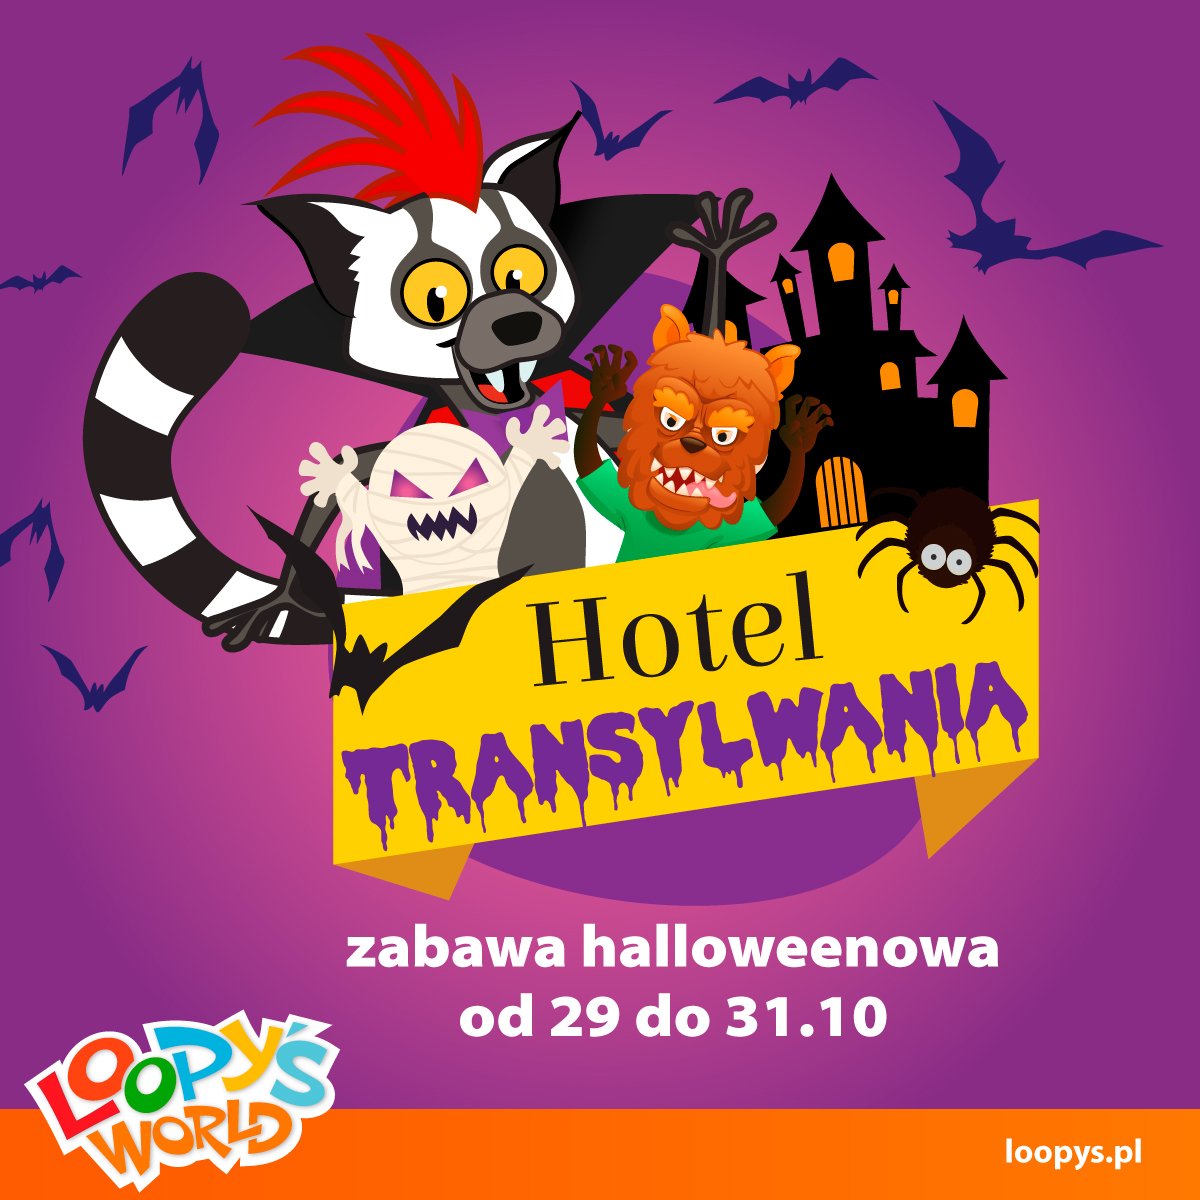 ikonka_hotel_transylwania halloween